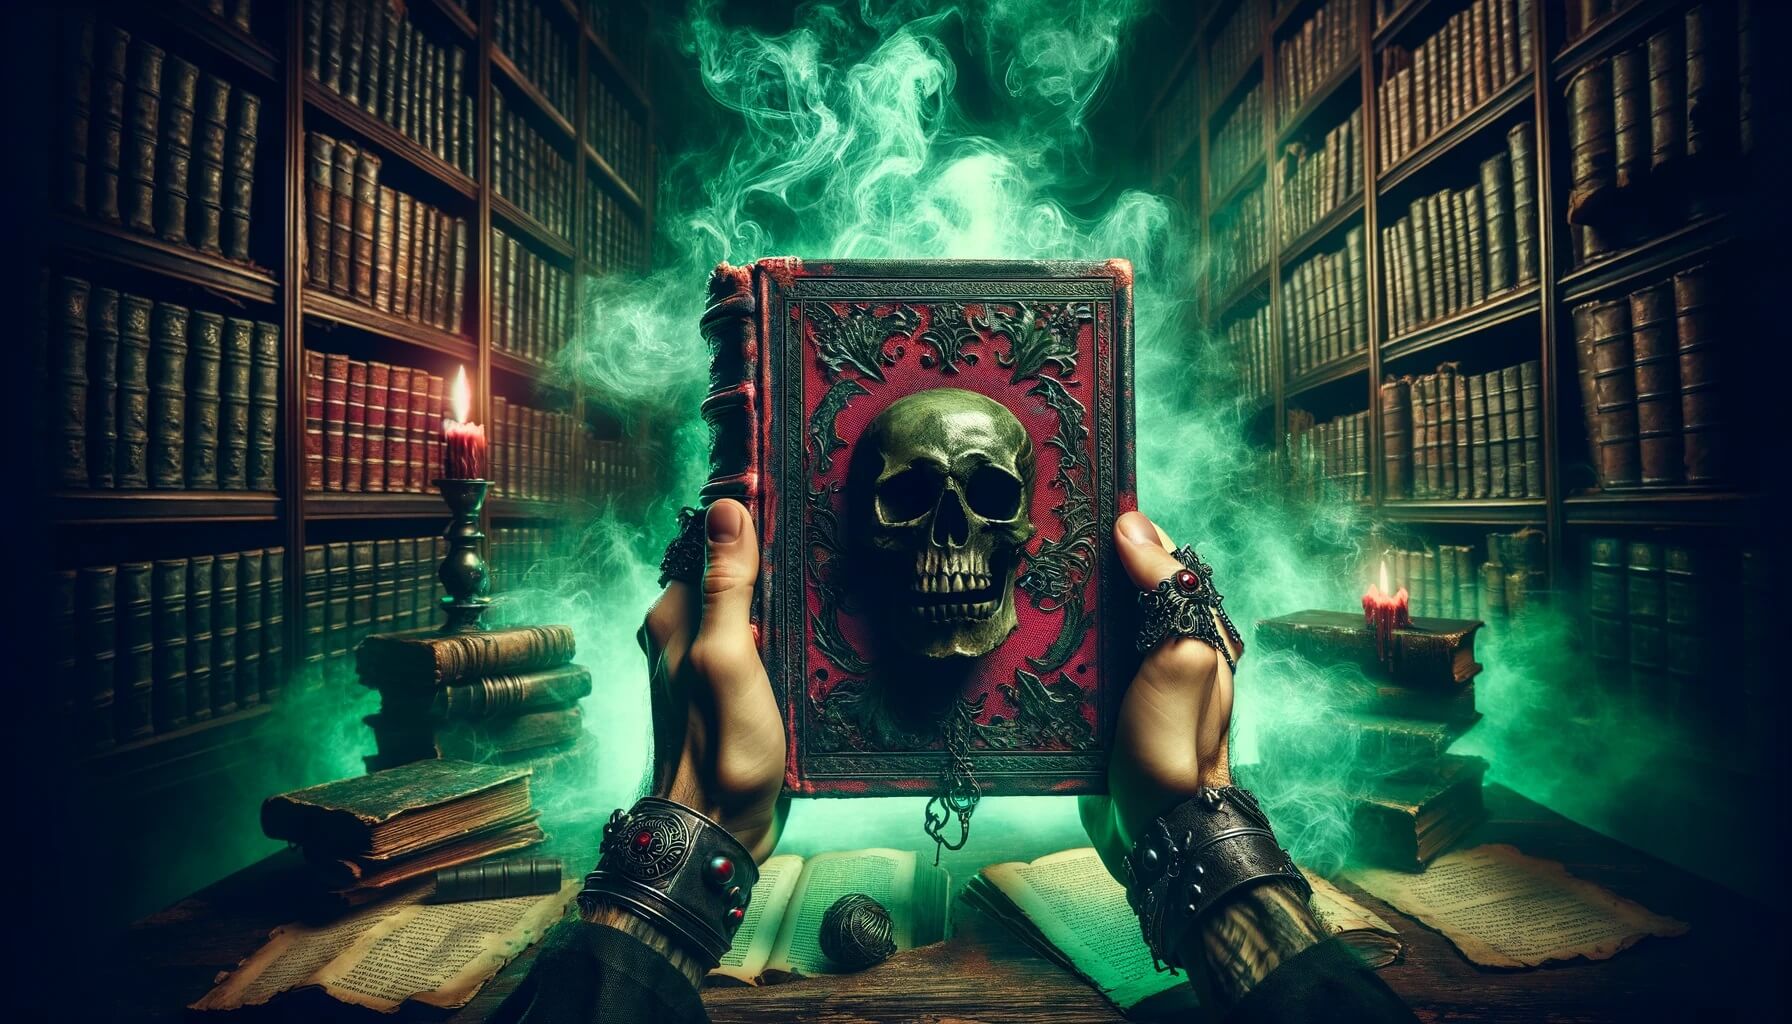 Из библиотек мира изымаются книги с зеленой и красной обложкой  они ядовиты